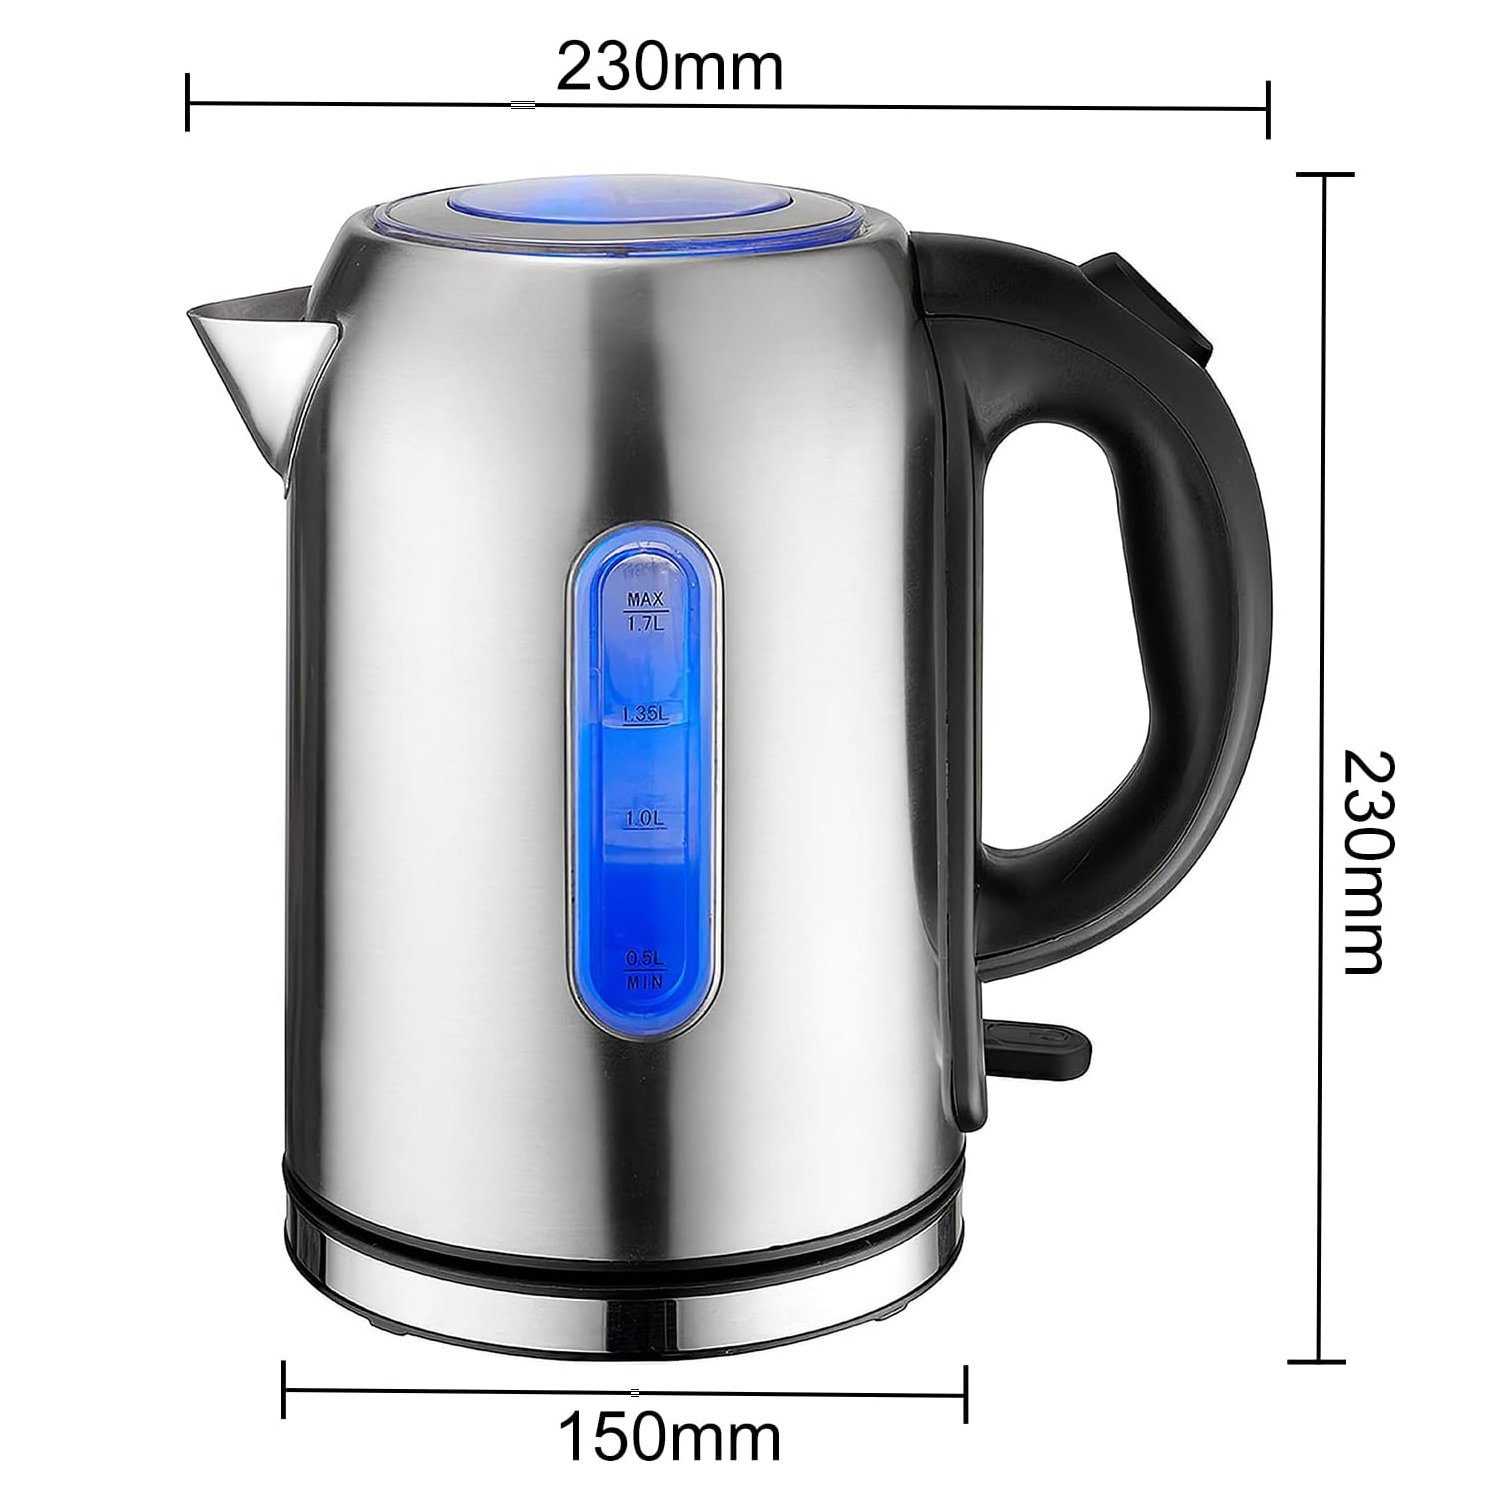 W, Mutoy für Kaffee Tee und Trockenkochschutz, 2000,00 LED-Anzeige,1,7L, Abschaltautomatik Elektrischer und Wasserkocher, Wasserkocher,mit Wasserkocher